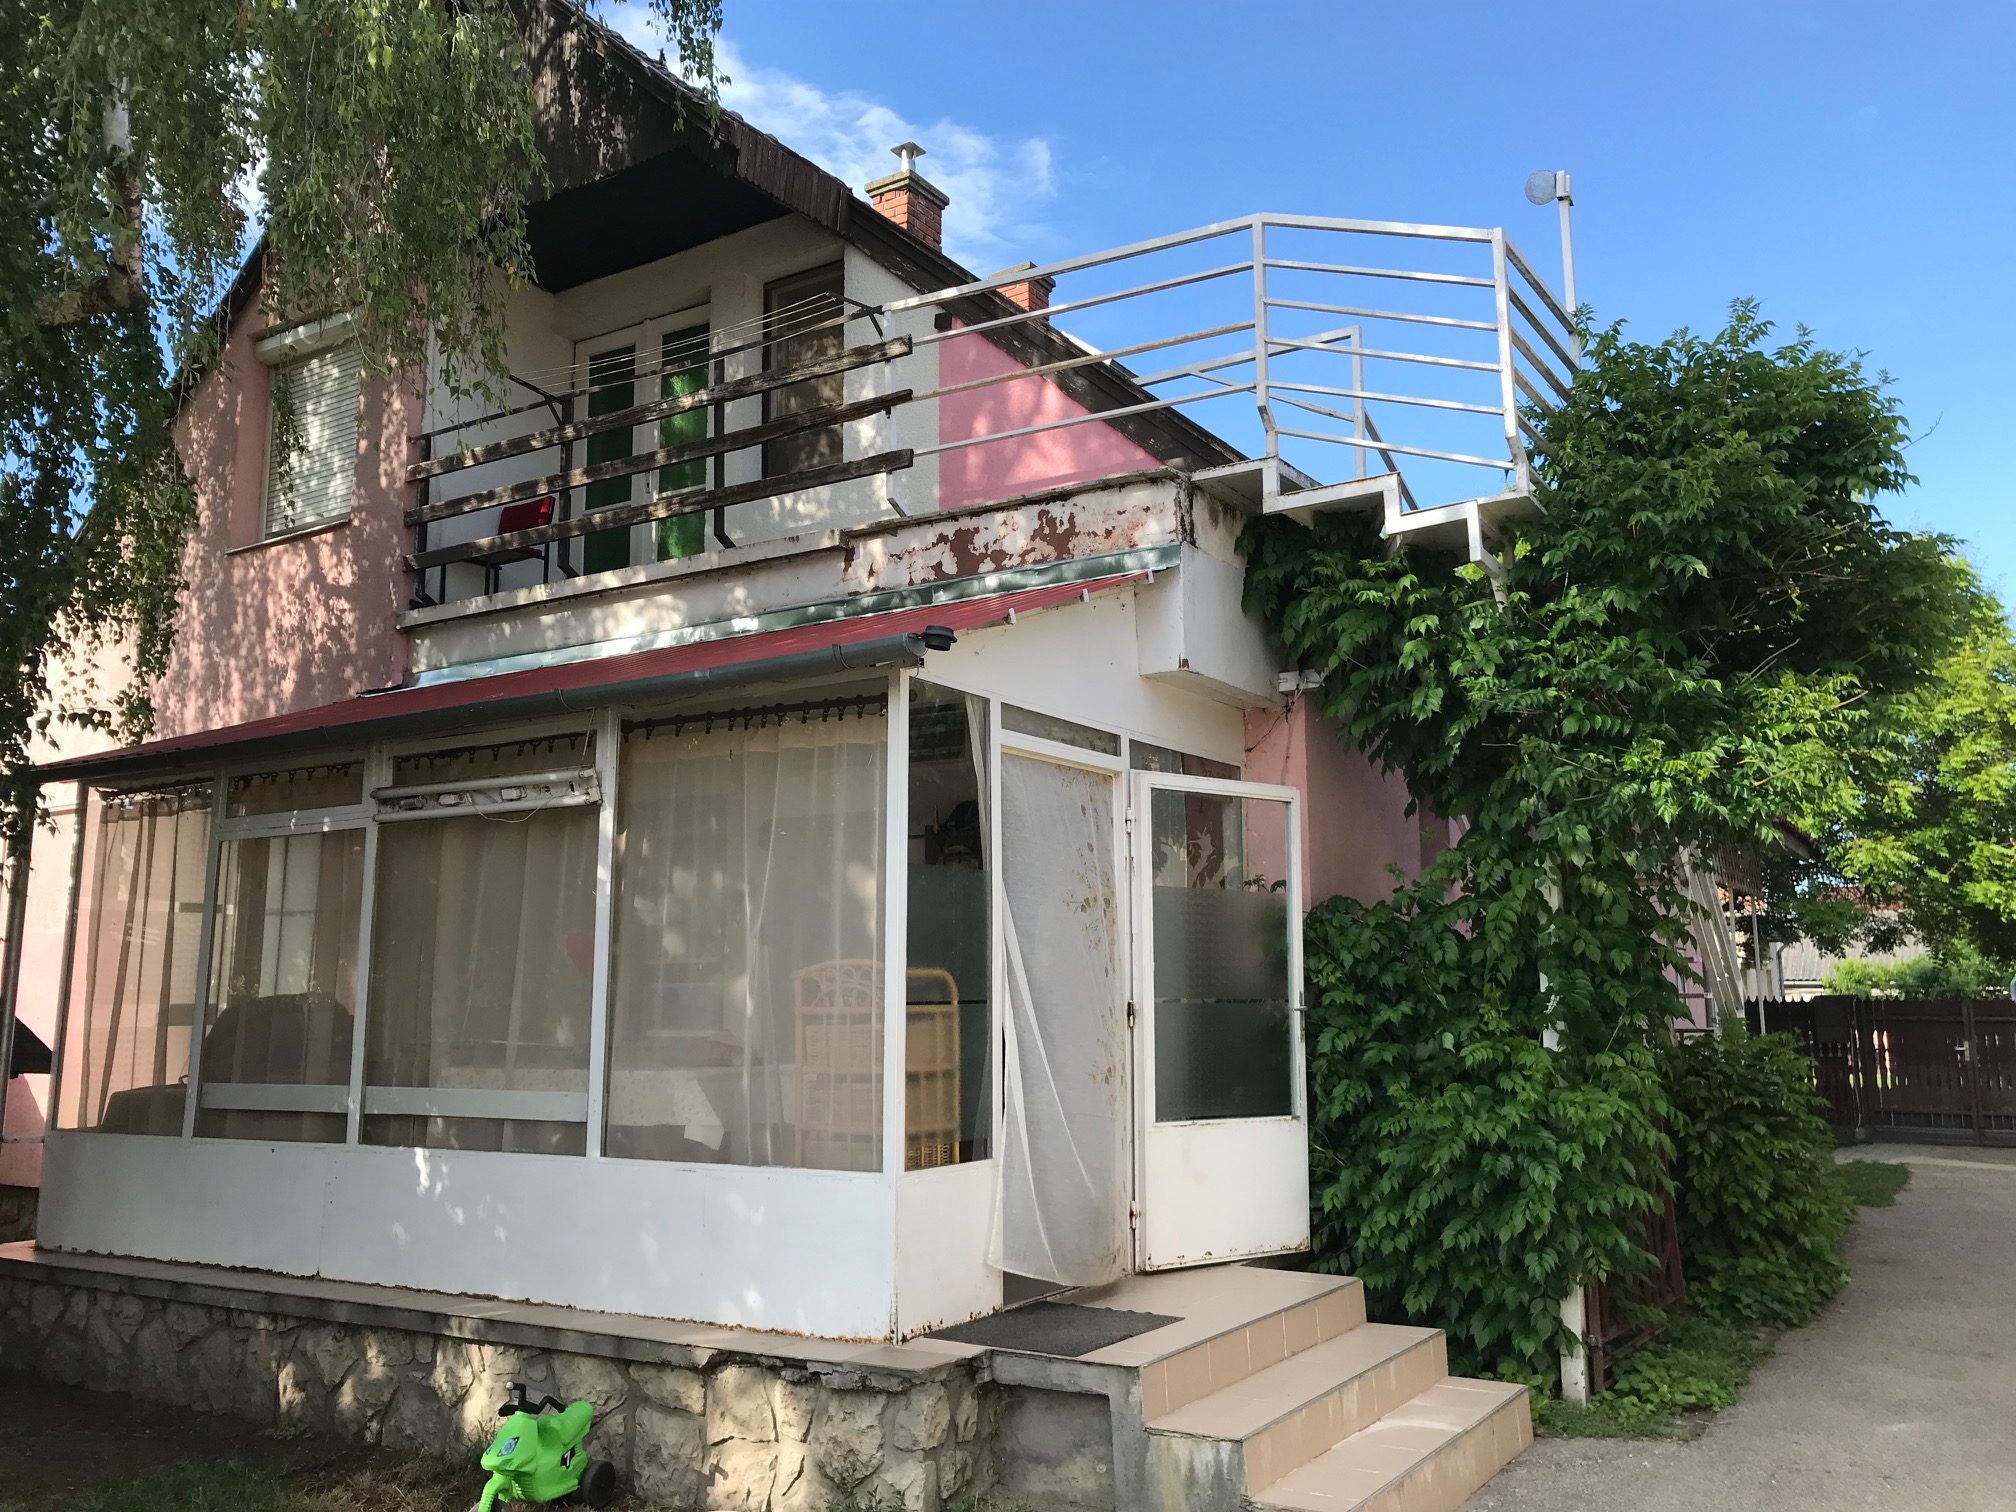 Kényelmes életteret biztosító apartmanház a Balatonnál